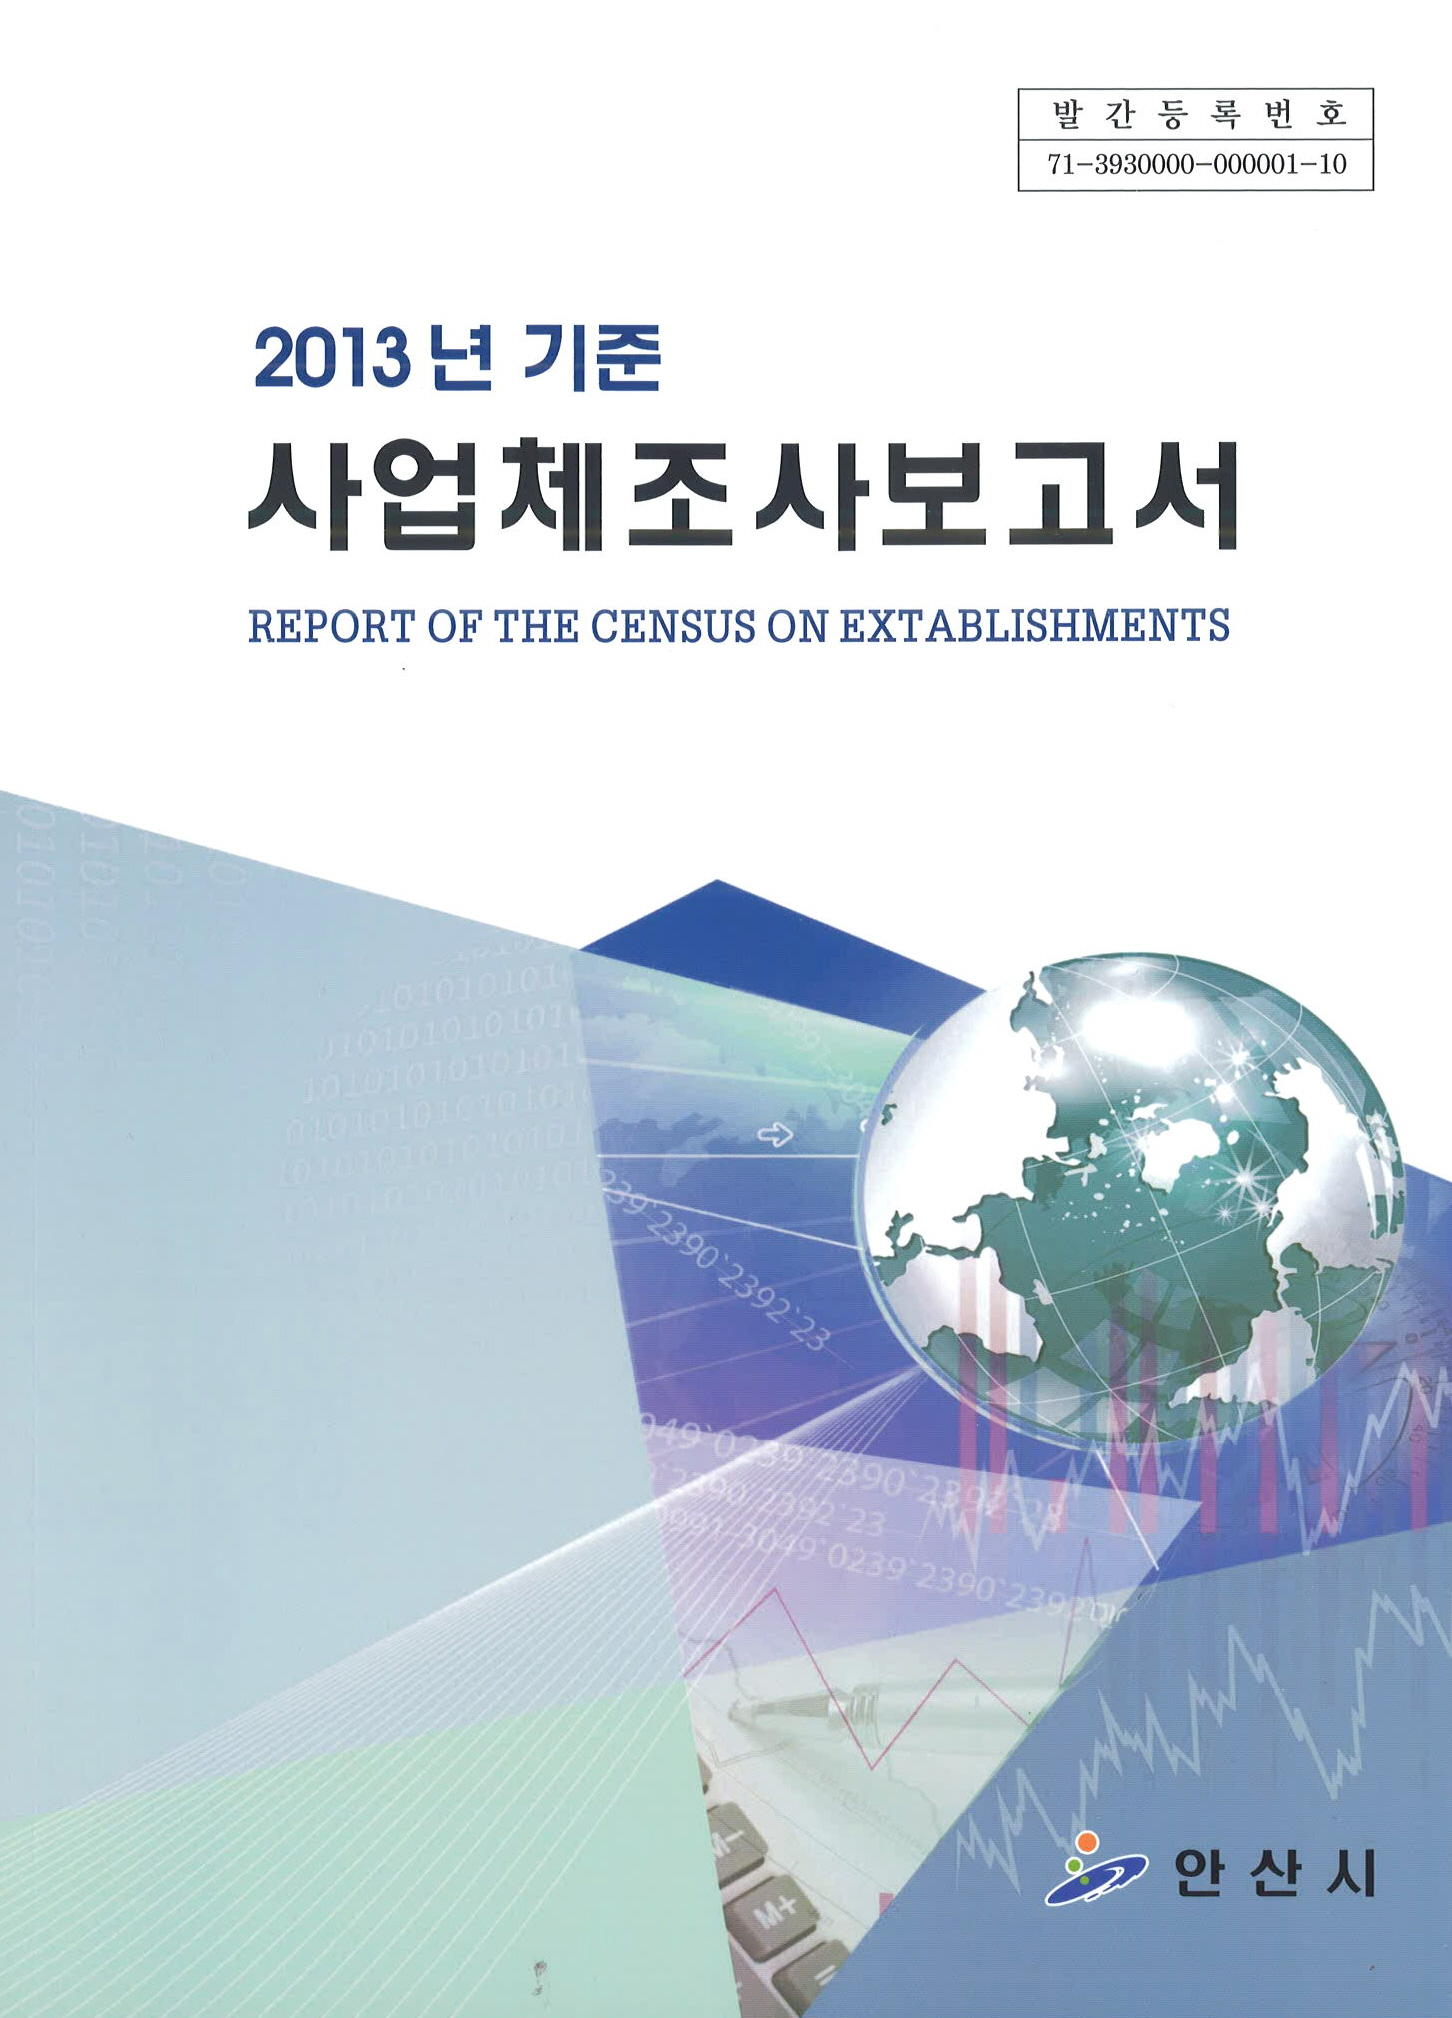 2013년 기준 사업체조사 보고서 사진